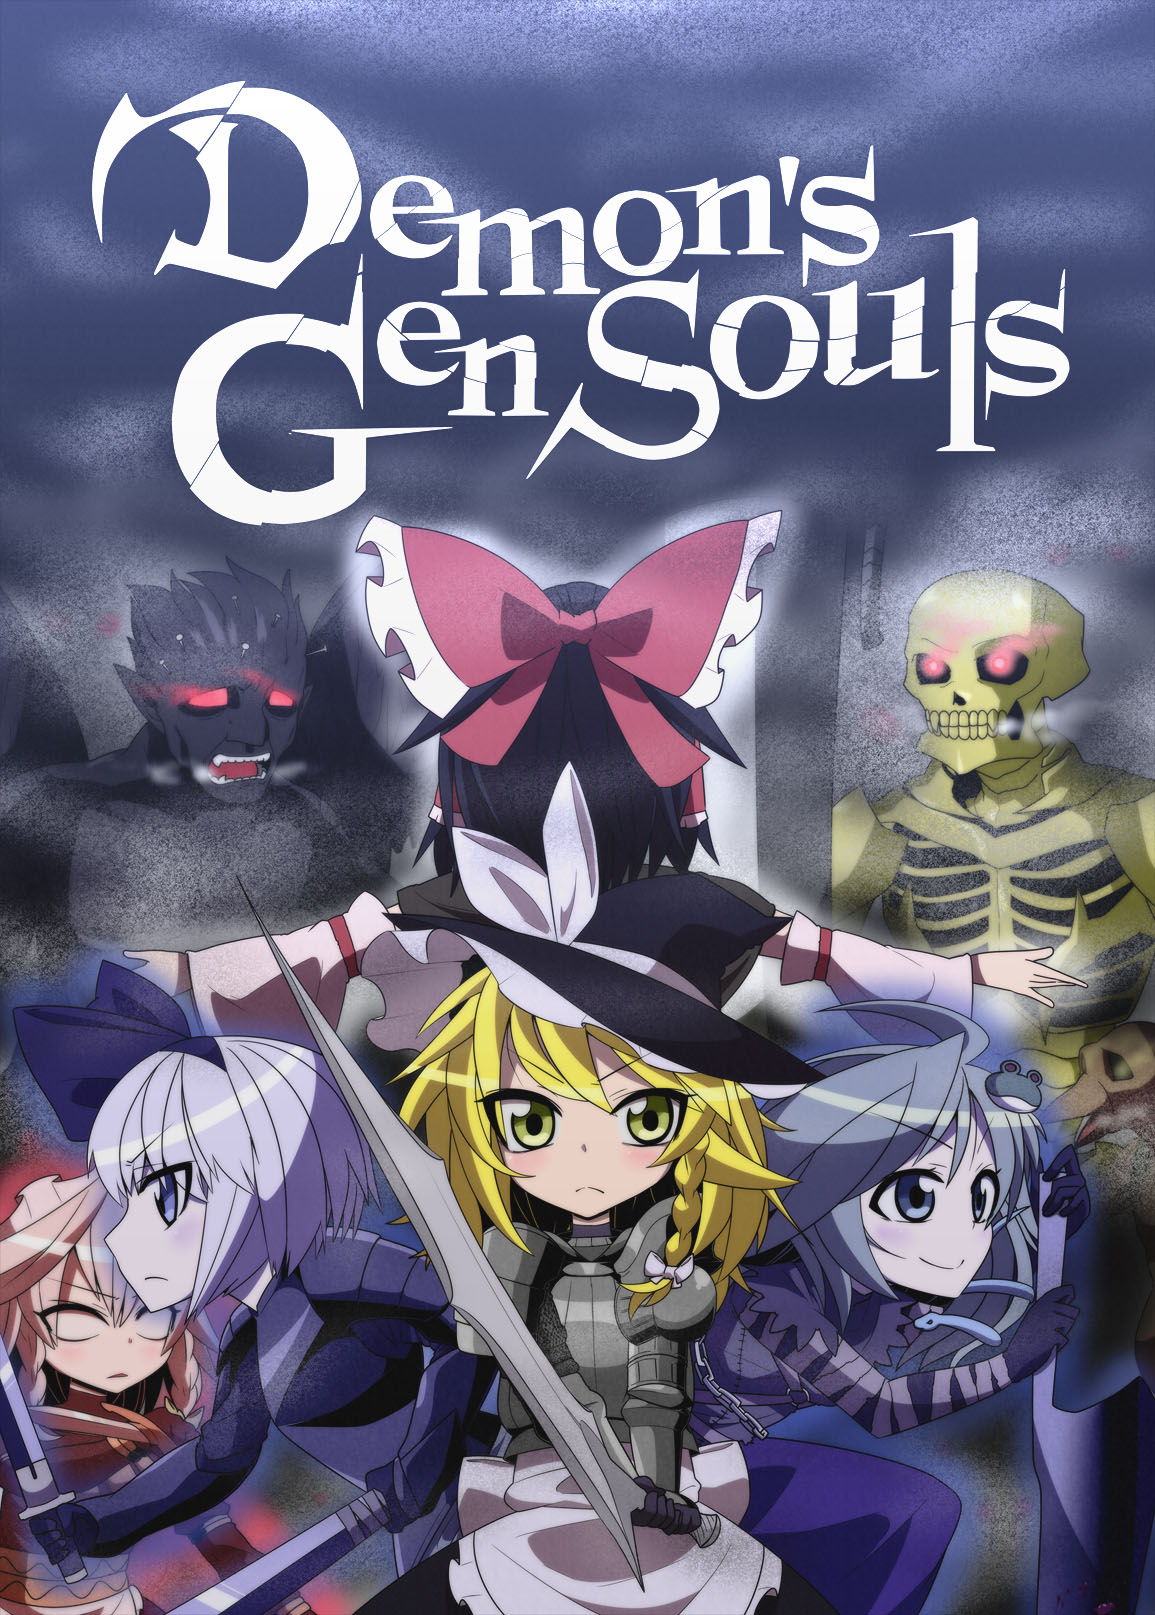 Demon's GenSouls